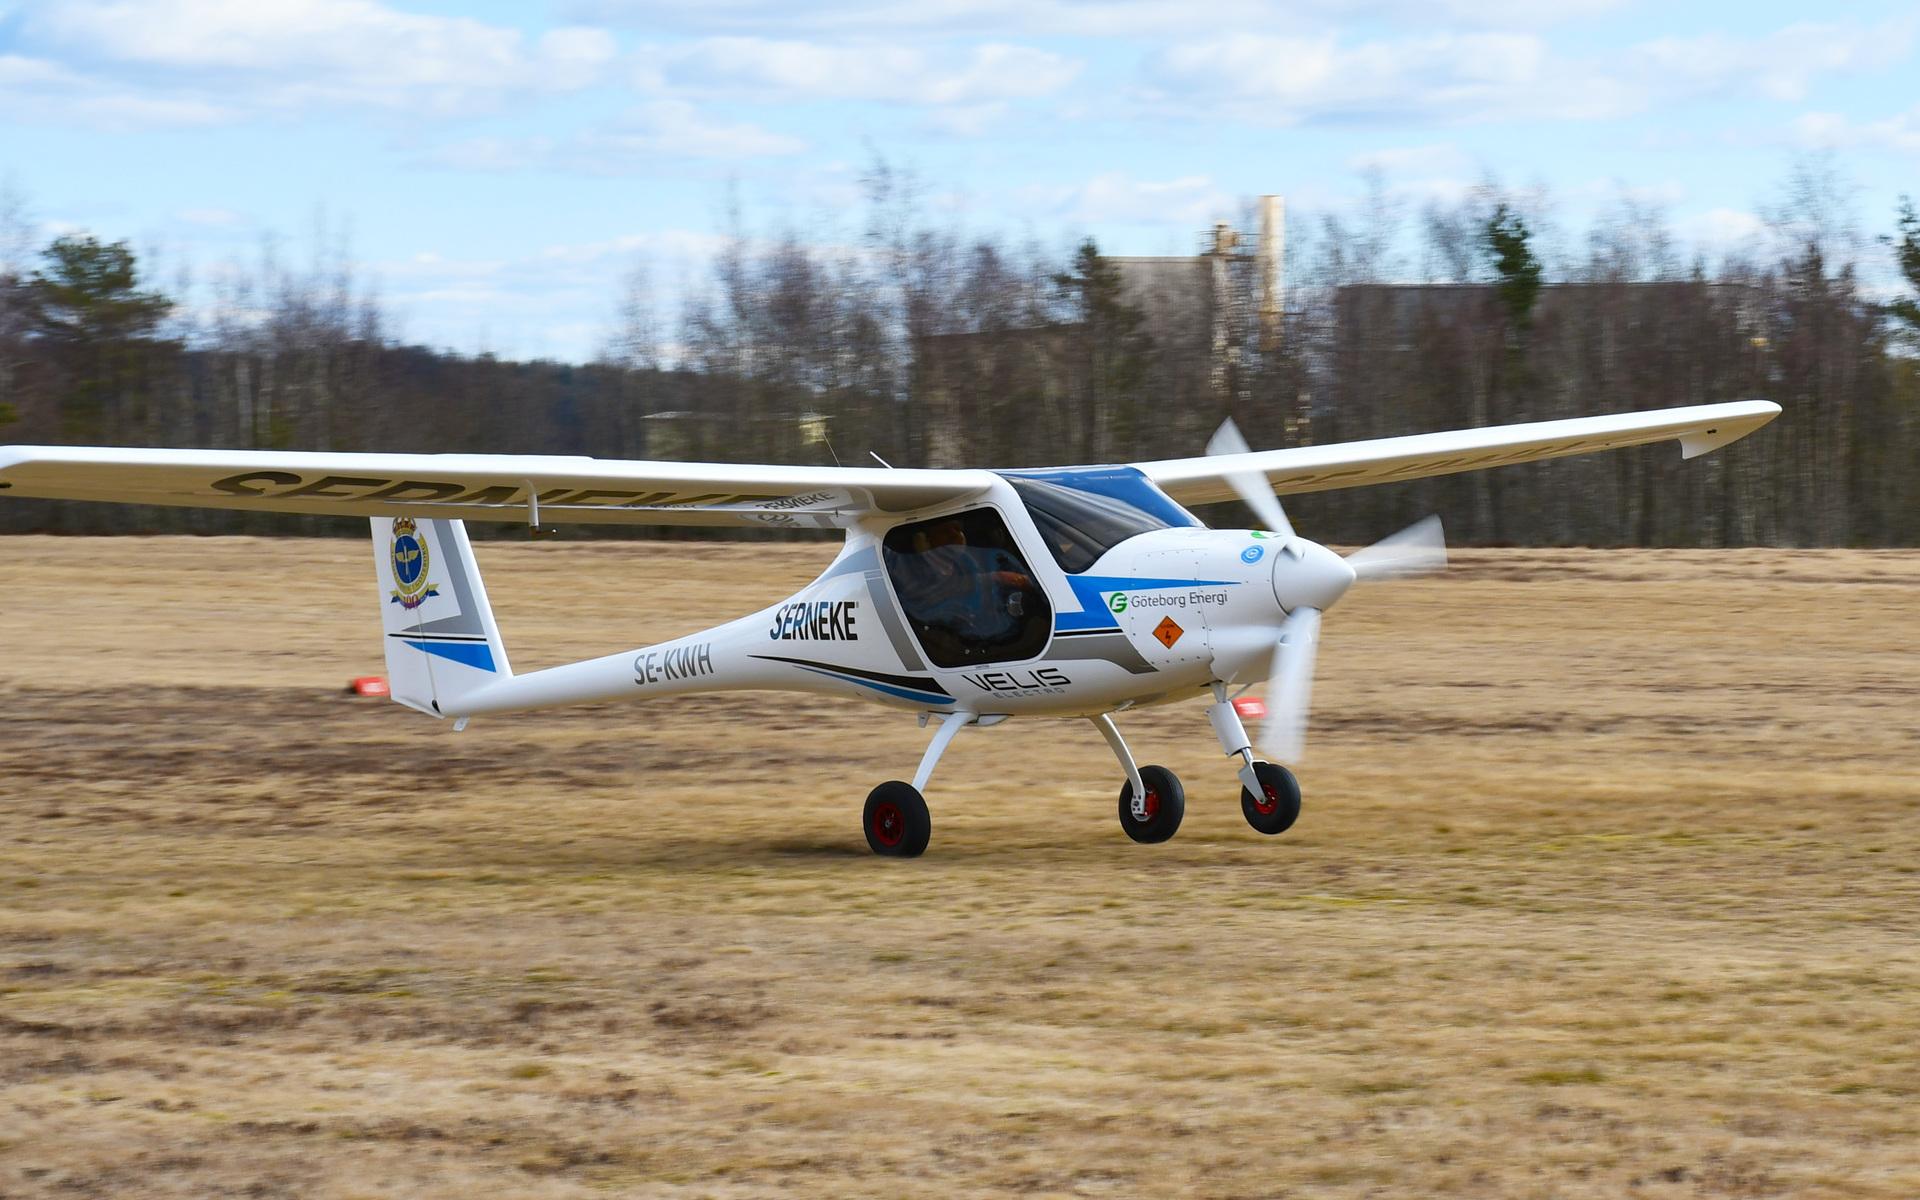 Här landar elflygplanet på Backamo flygklubb.